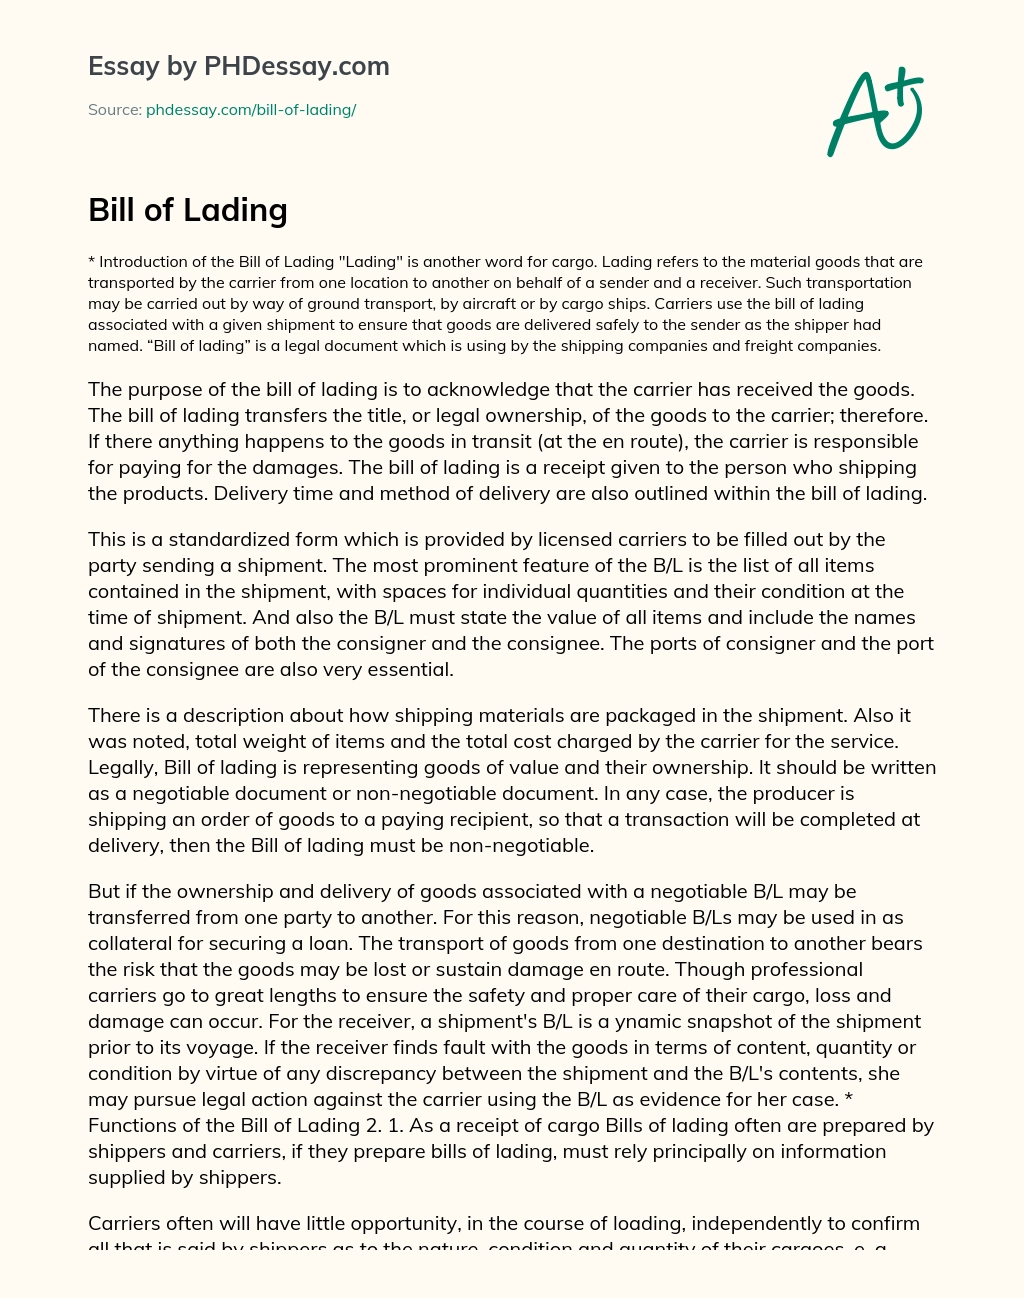 Bill of Lading essay